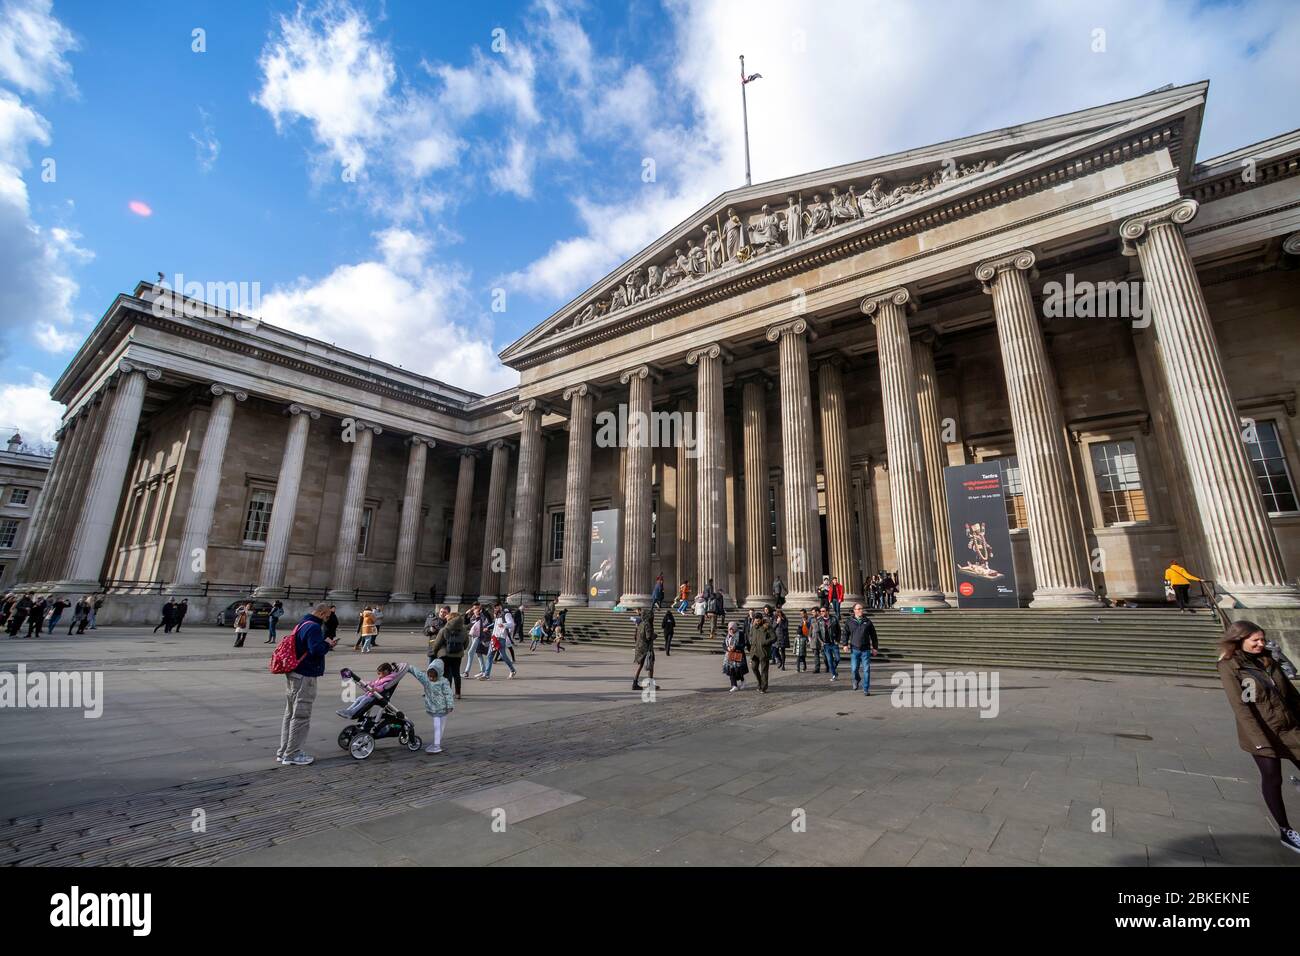 British Museum, London, UK Stock Photo